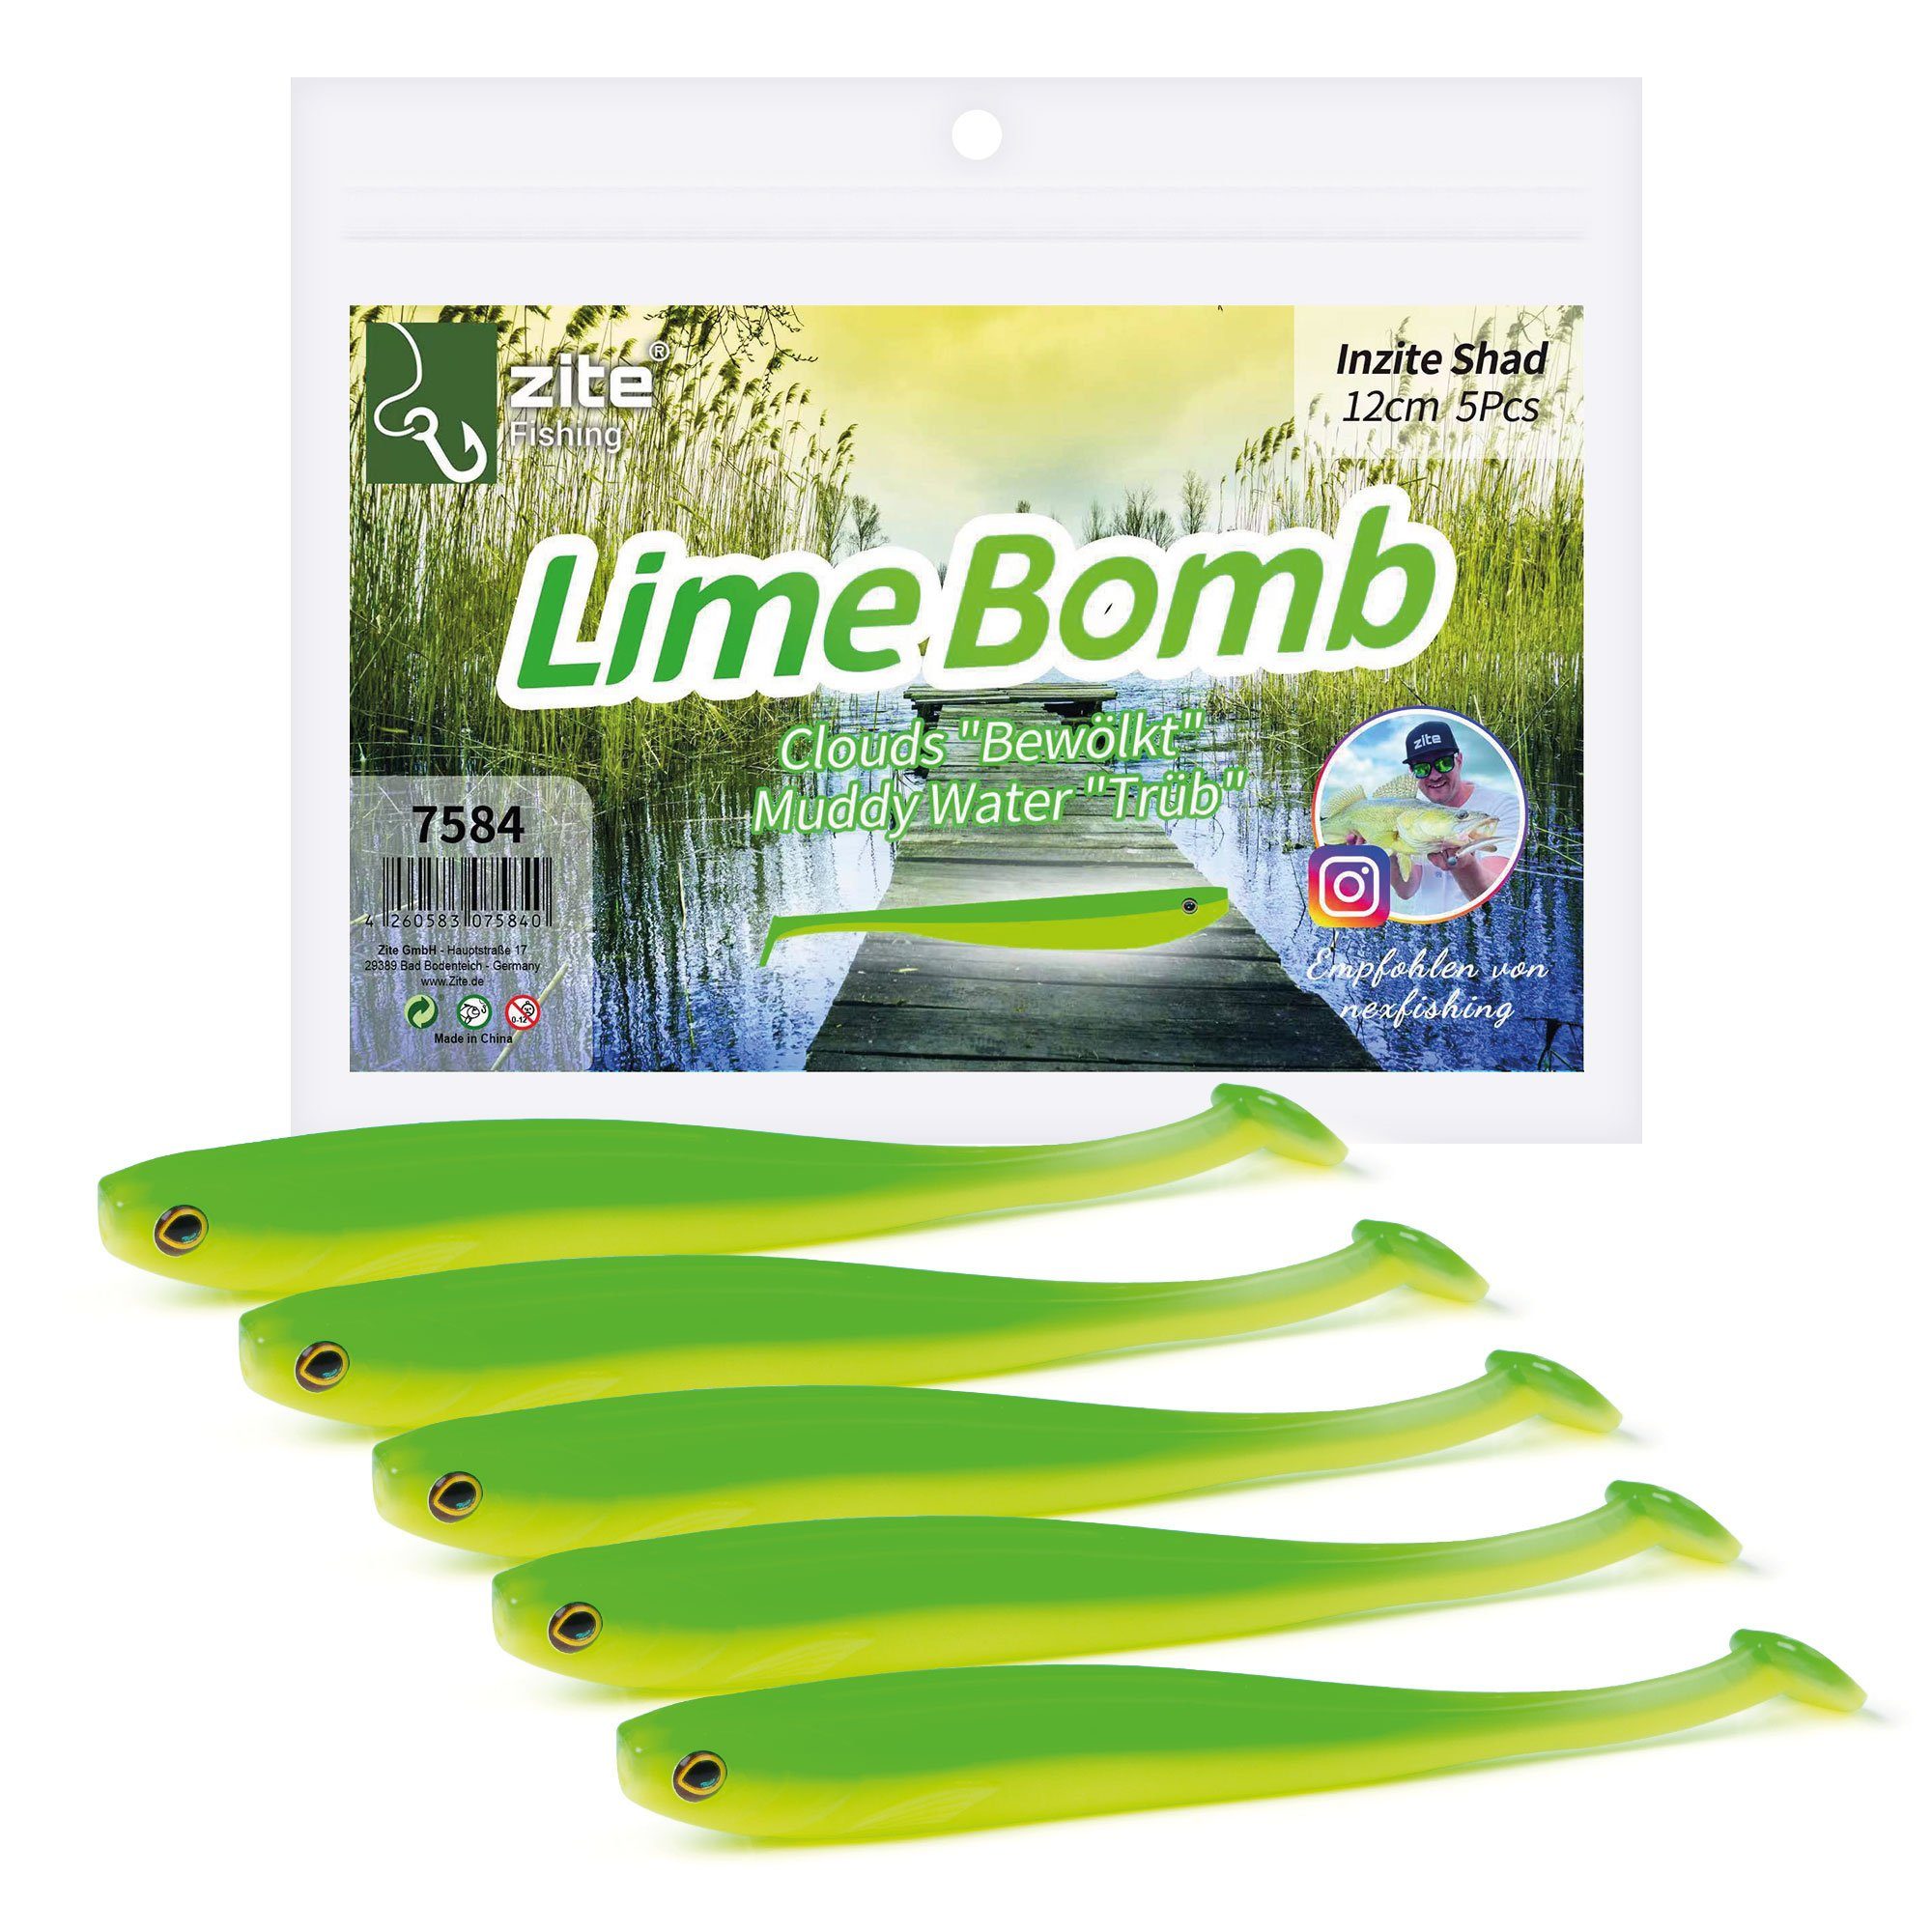 Zite Kunstköder Inzite Shad Lime Bomb - Zander Gummiköder 12 cm 5 Stück